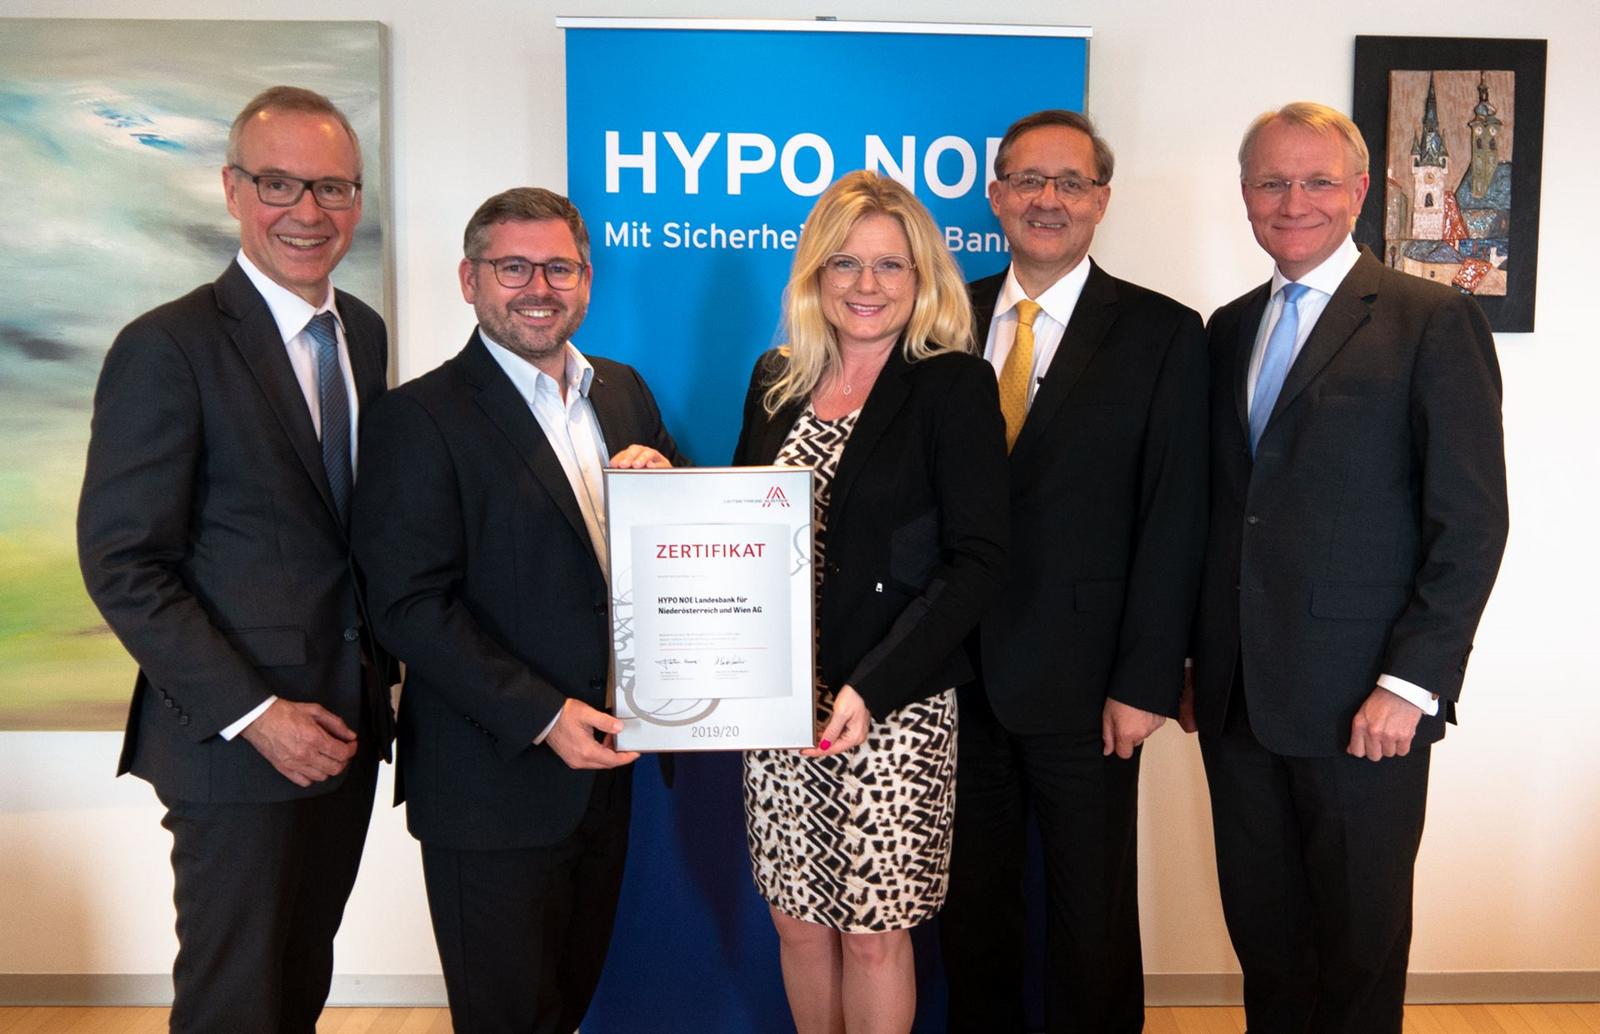 HYPO NOE ist einer von nur 50 niederösterreichischen Leitbetrieben – Nachhaltigkeit und unternehmerischer Erfolg sind kein Widerspruch